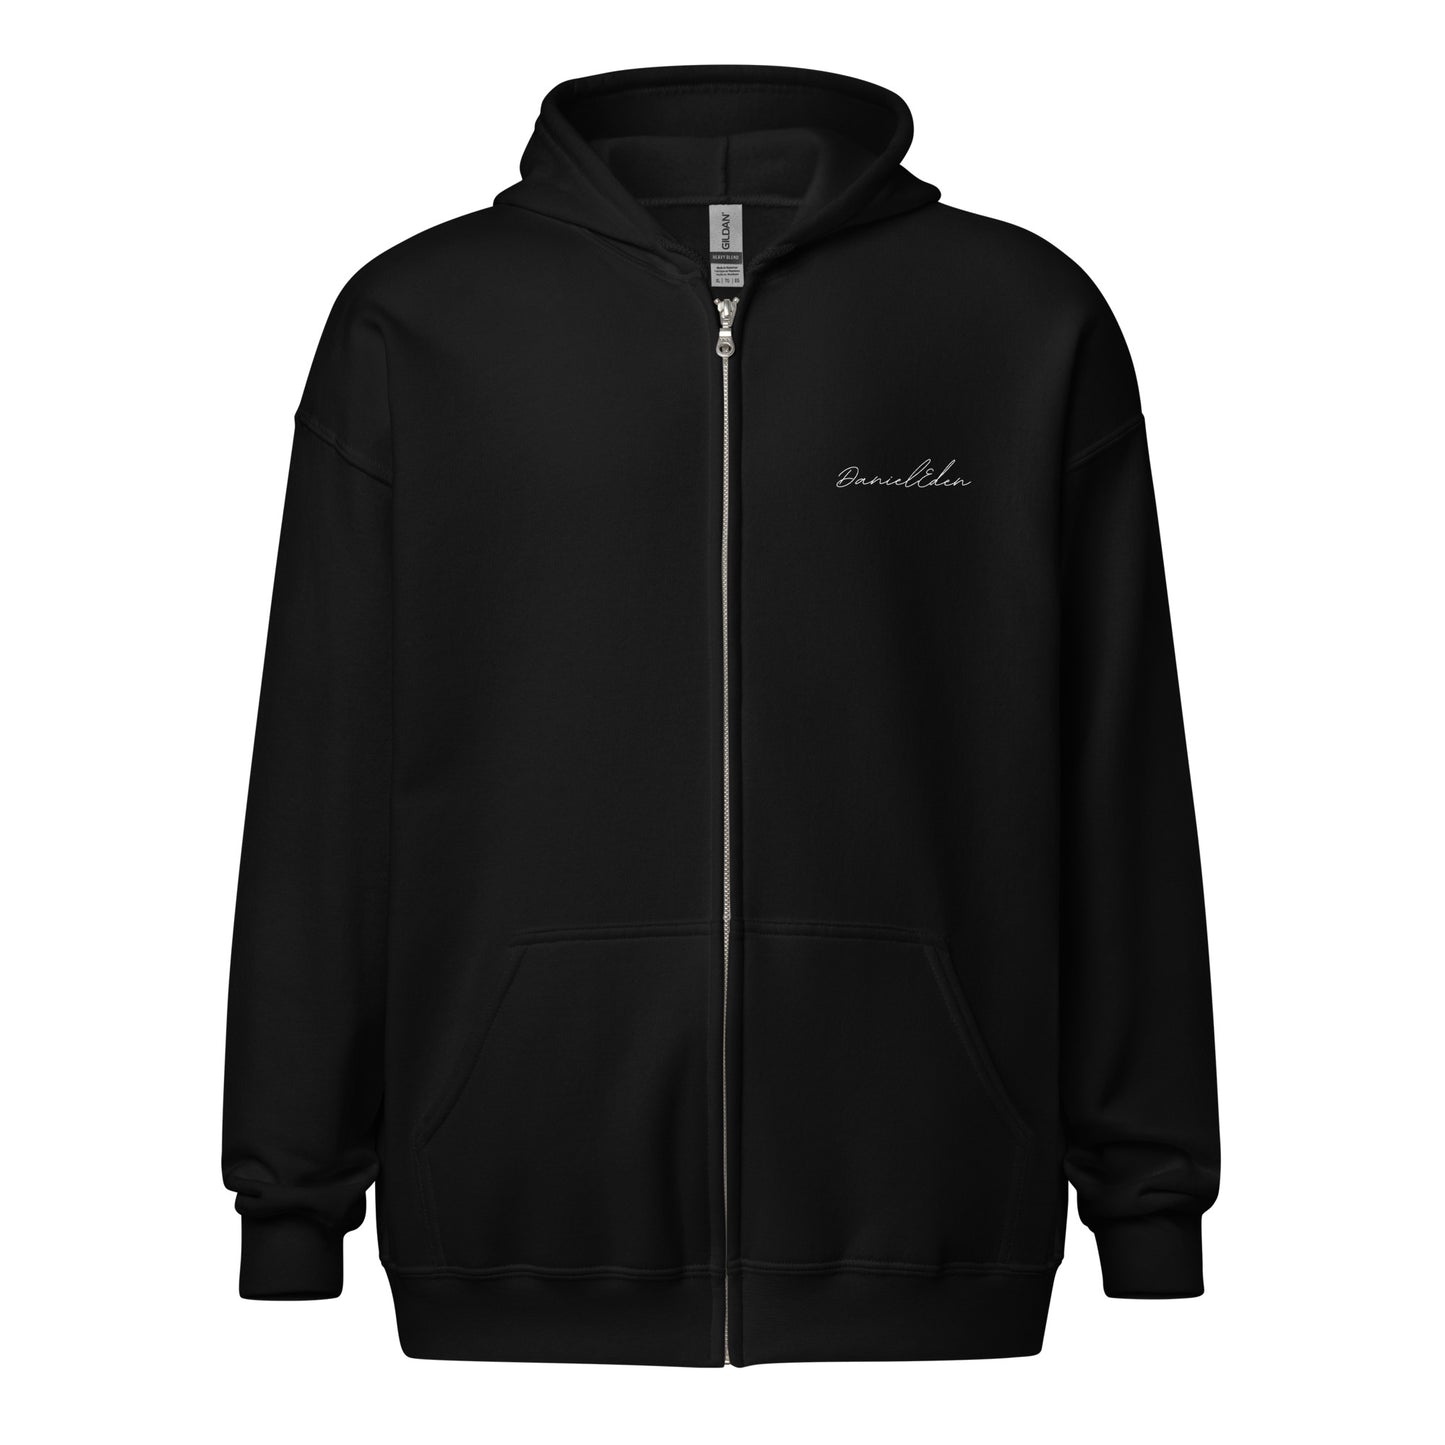 DanielEden heavy blend zip hoodie " STOICISM"